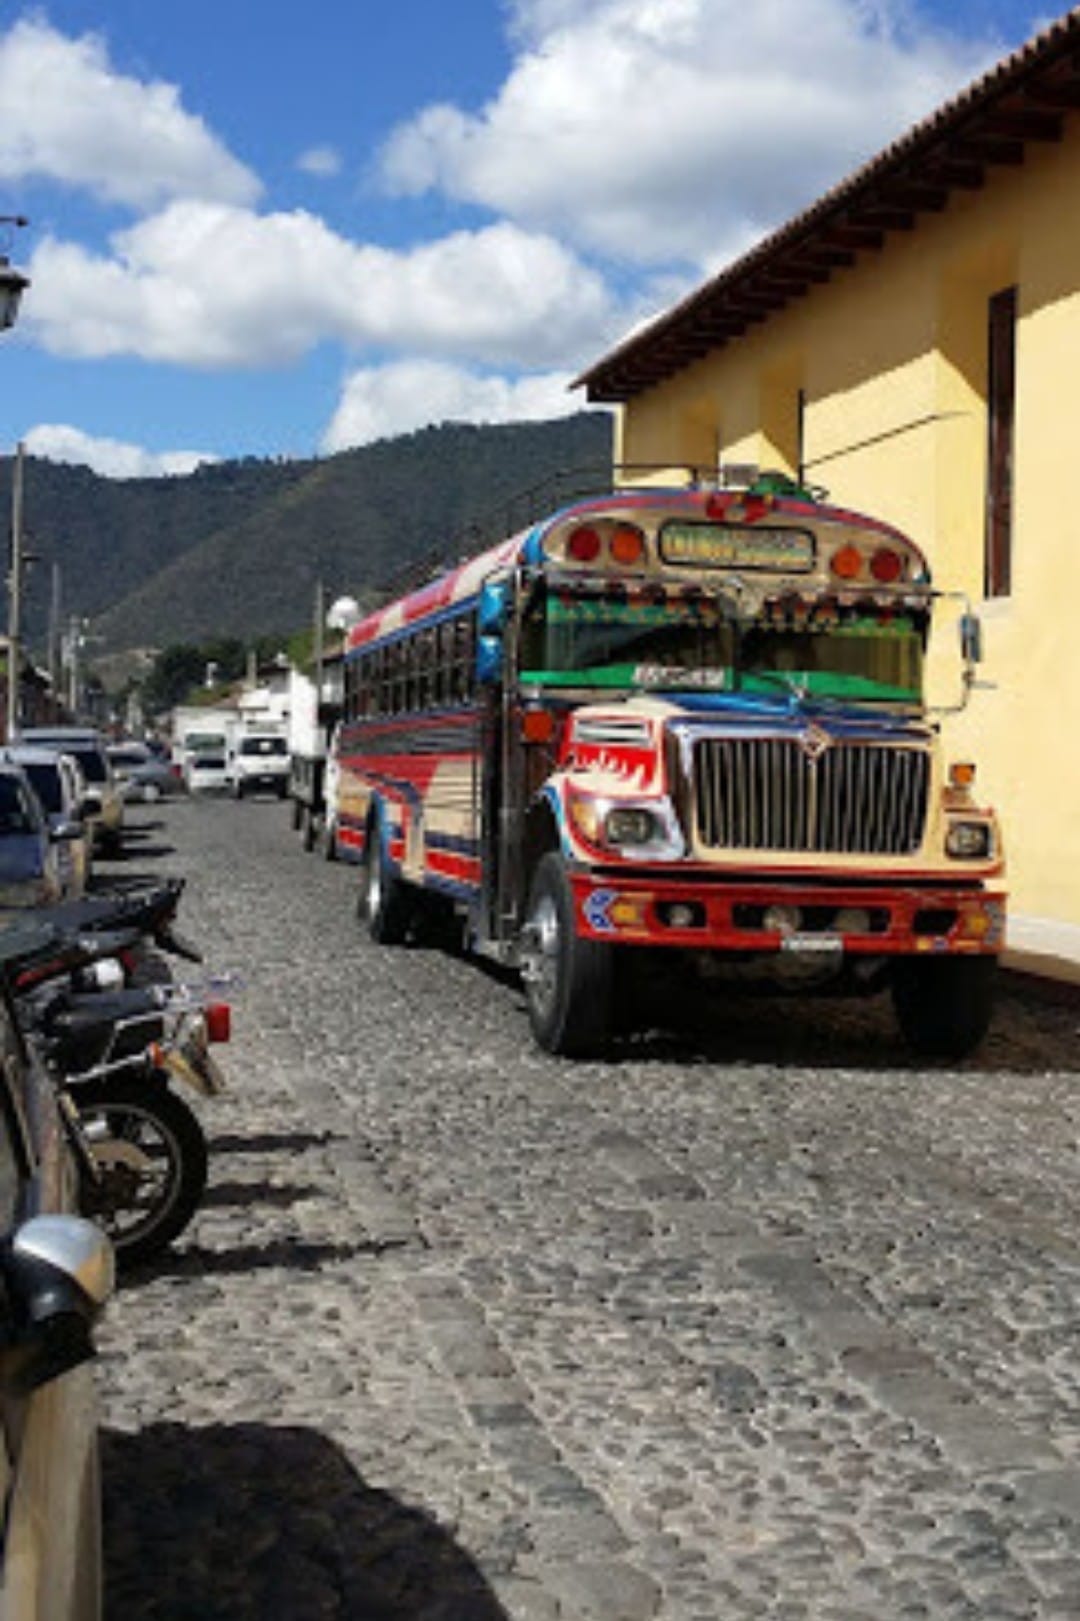 Chicken busy: Nečekaně kulturní zážitek z Guatemaly